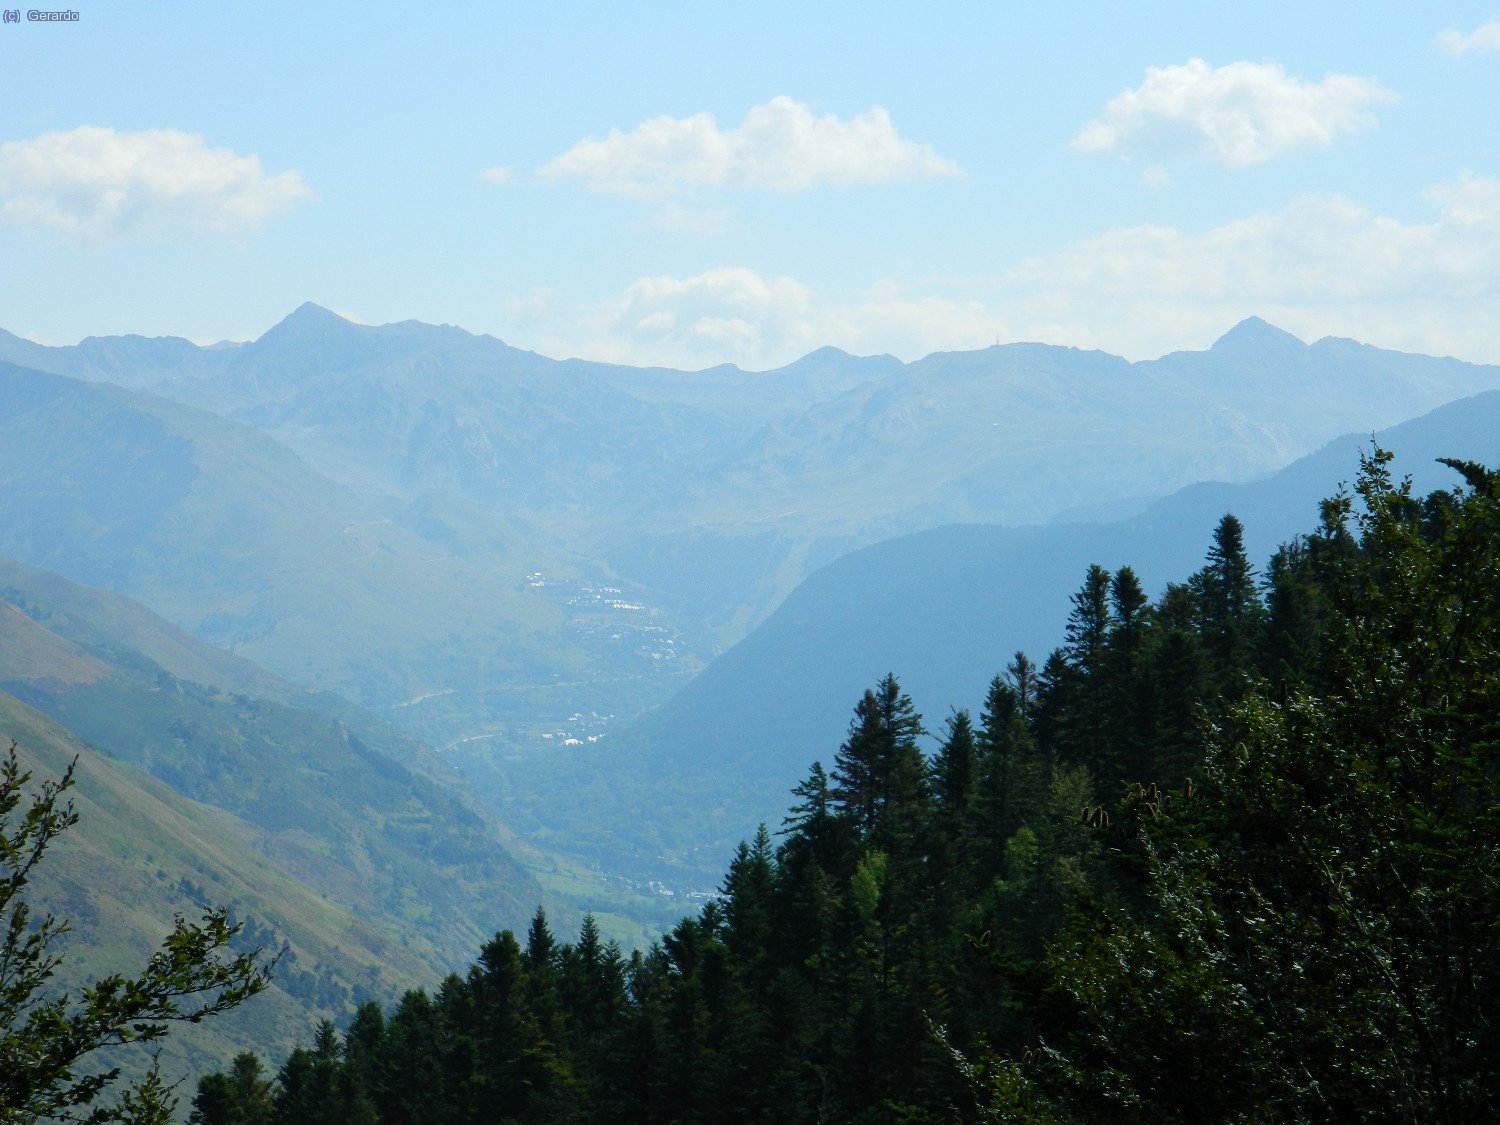 A la siguiente jornada, el Tuc de Baciver a la izquierda y el de la Llansa a la derecha, fotografiados desde una pista forestal por encima del pueblo de Casau.